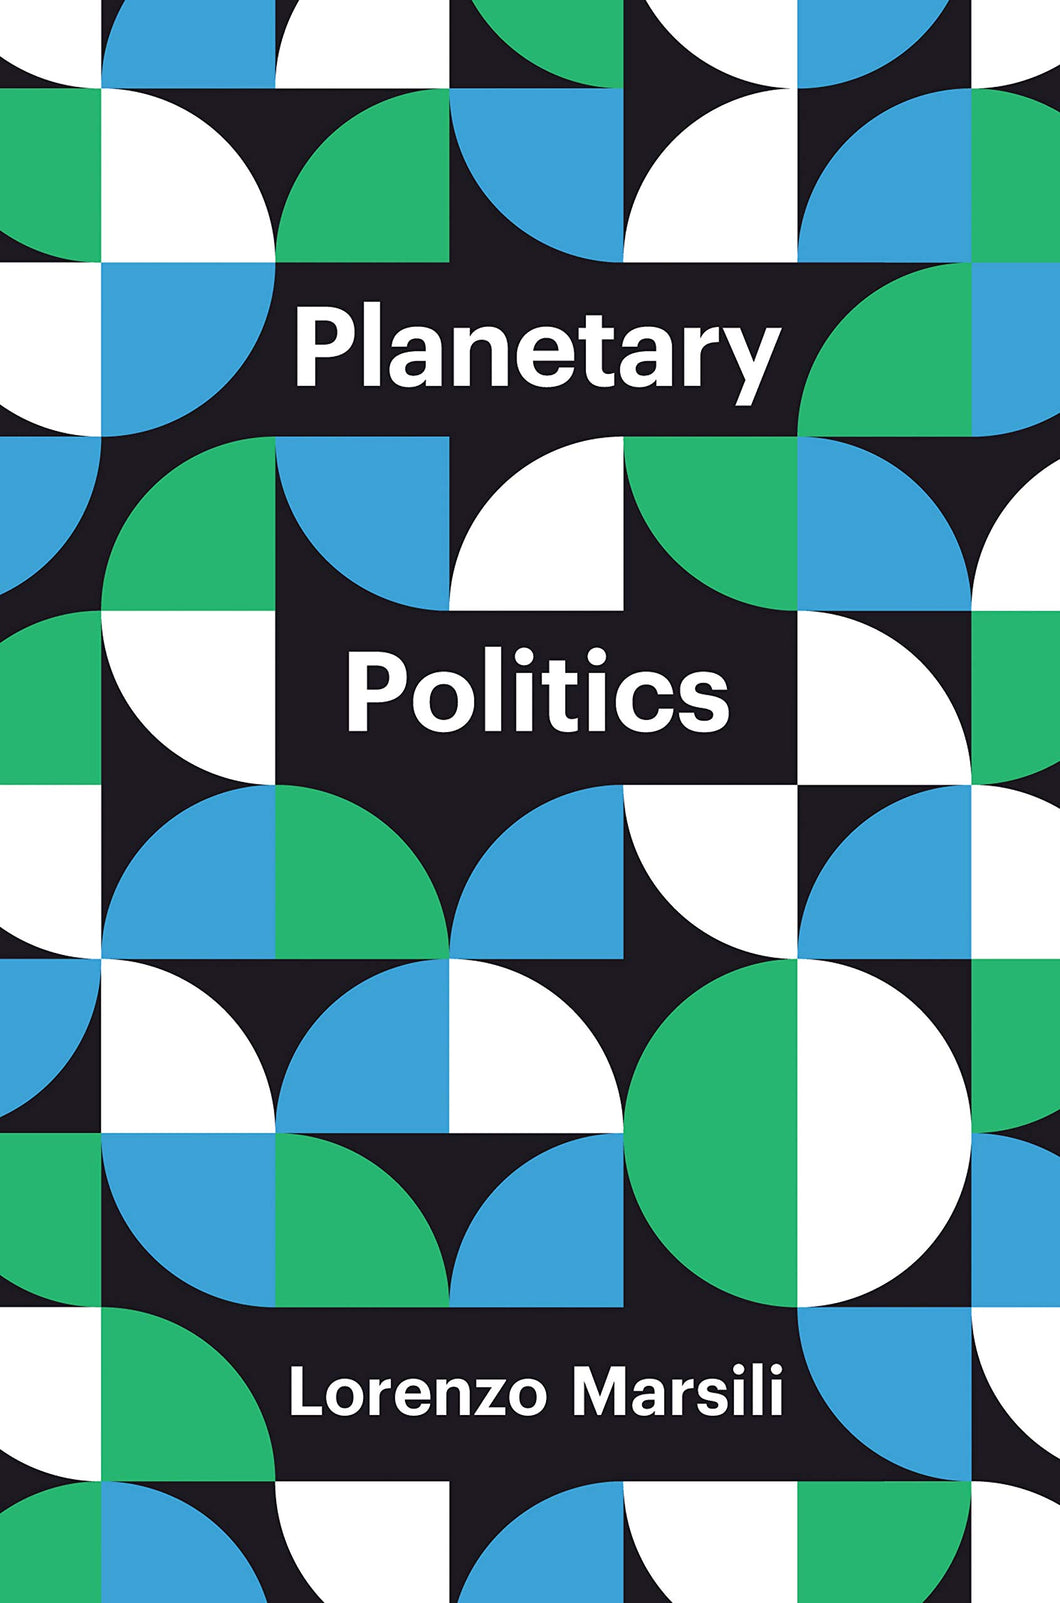 Planetary Politics : A Manifesto ร้านหนังสือและสิ่งของ เป็นร้านหนังสือภาษาอังกฤษหายาก และร้านกาแฟ หรือ บุ๊คคาเฟ่ ตั้งอยู่สุขุมวิท กรุงเทพ